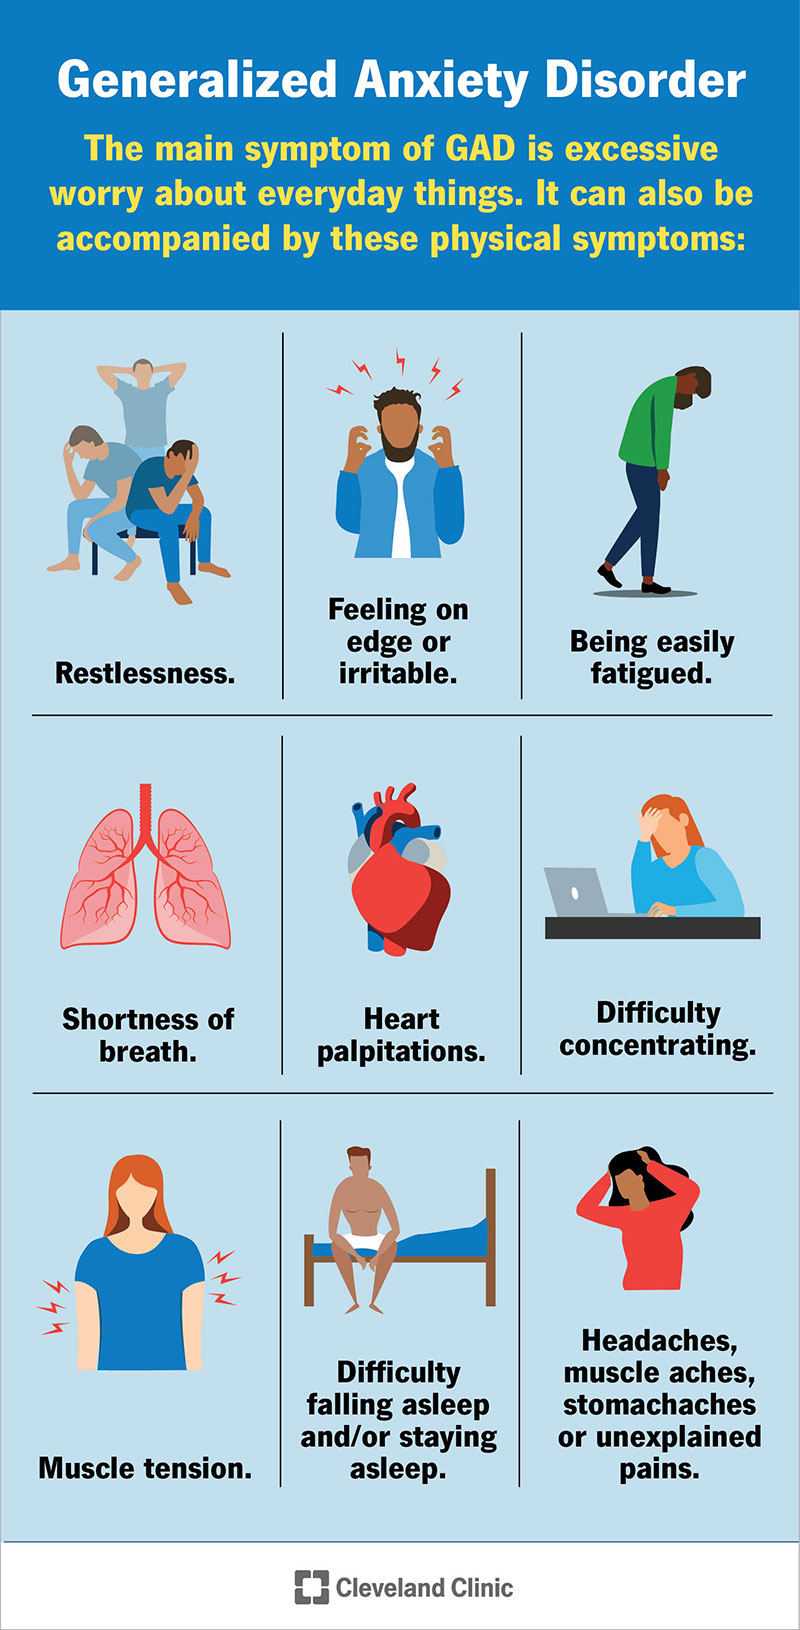 I sintomi fisici del GAD possono includere irrequietezza, sensazione di nervosismo, palpitazioni cardiache, mancanza di respiro e altro ancora.